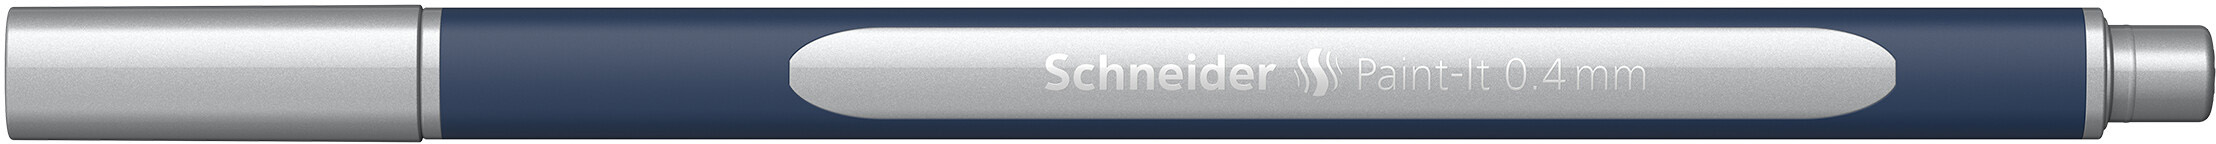 SCHNEIDER Roller Paint-it ML050011007 silver metallic